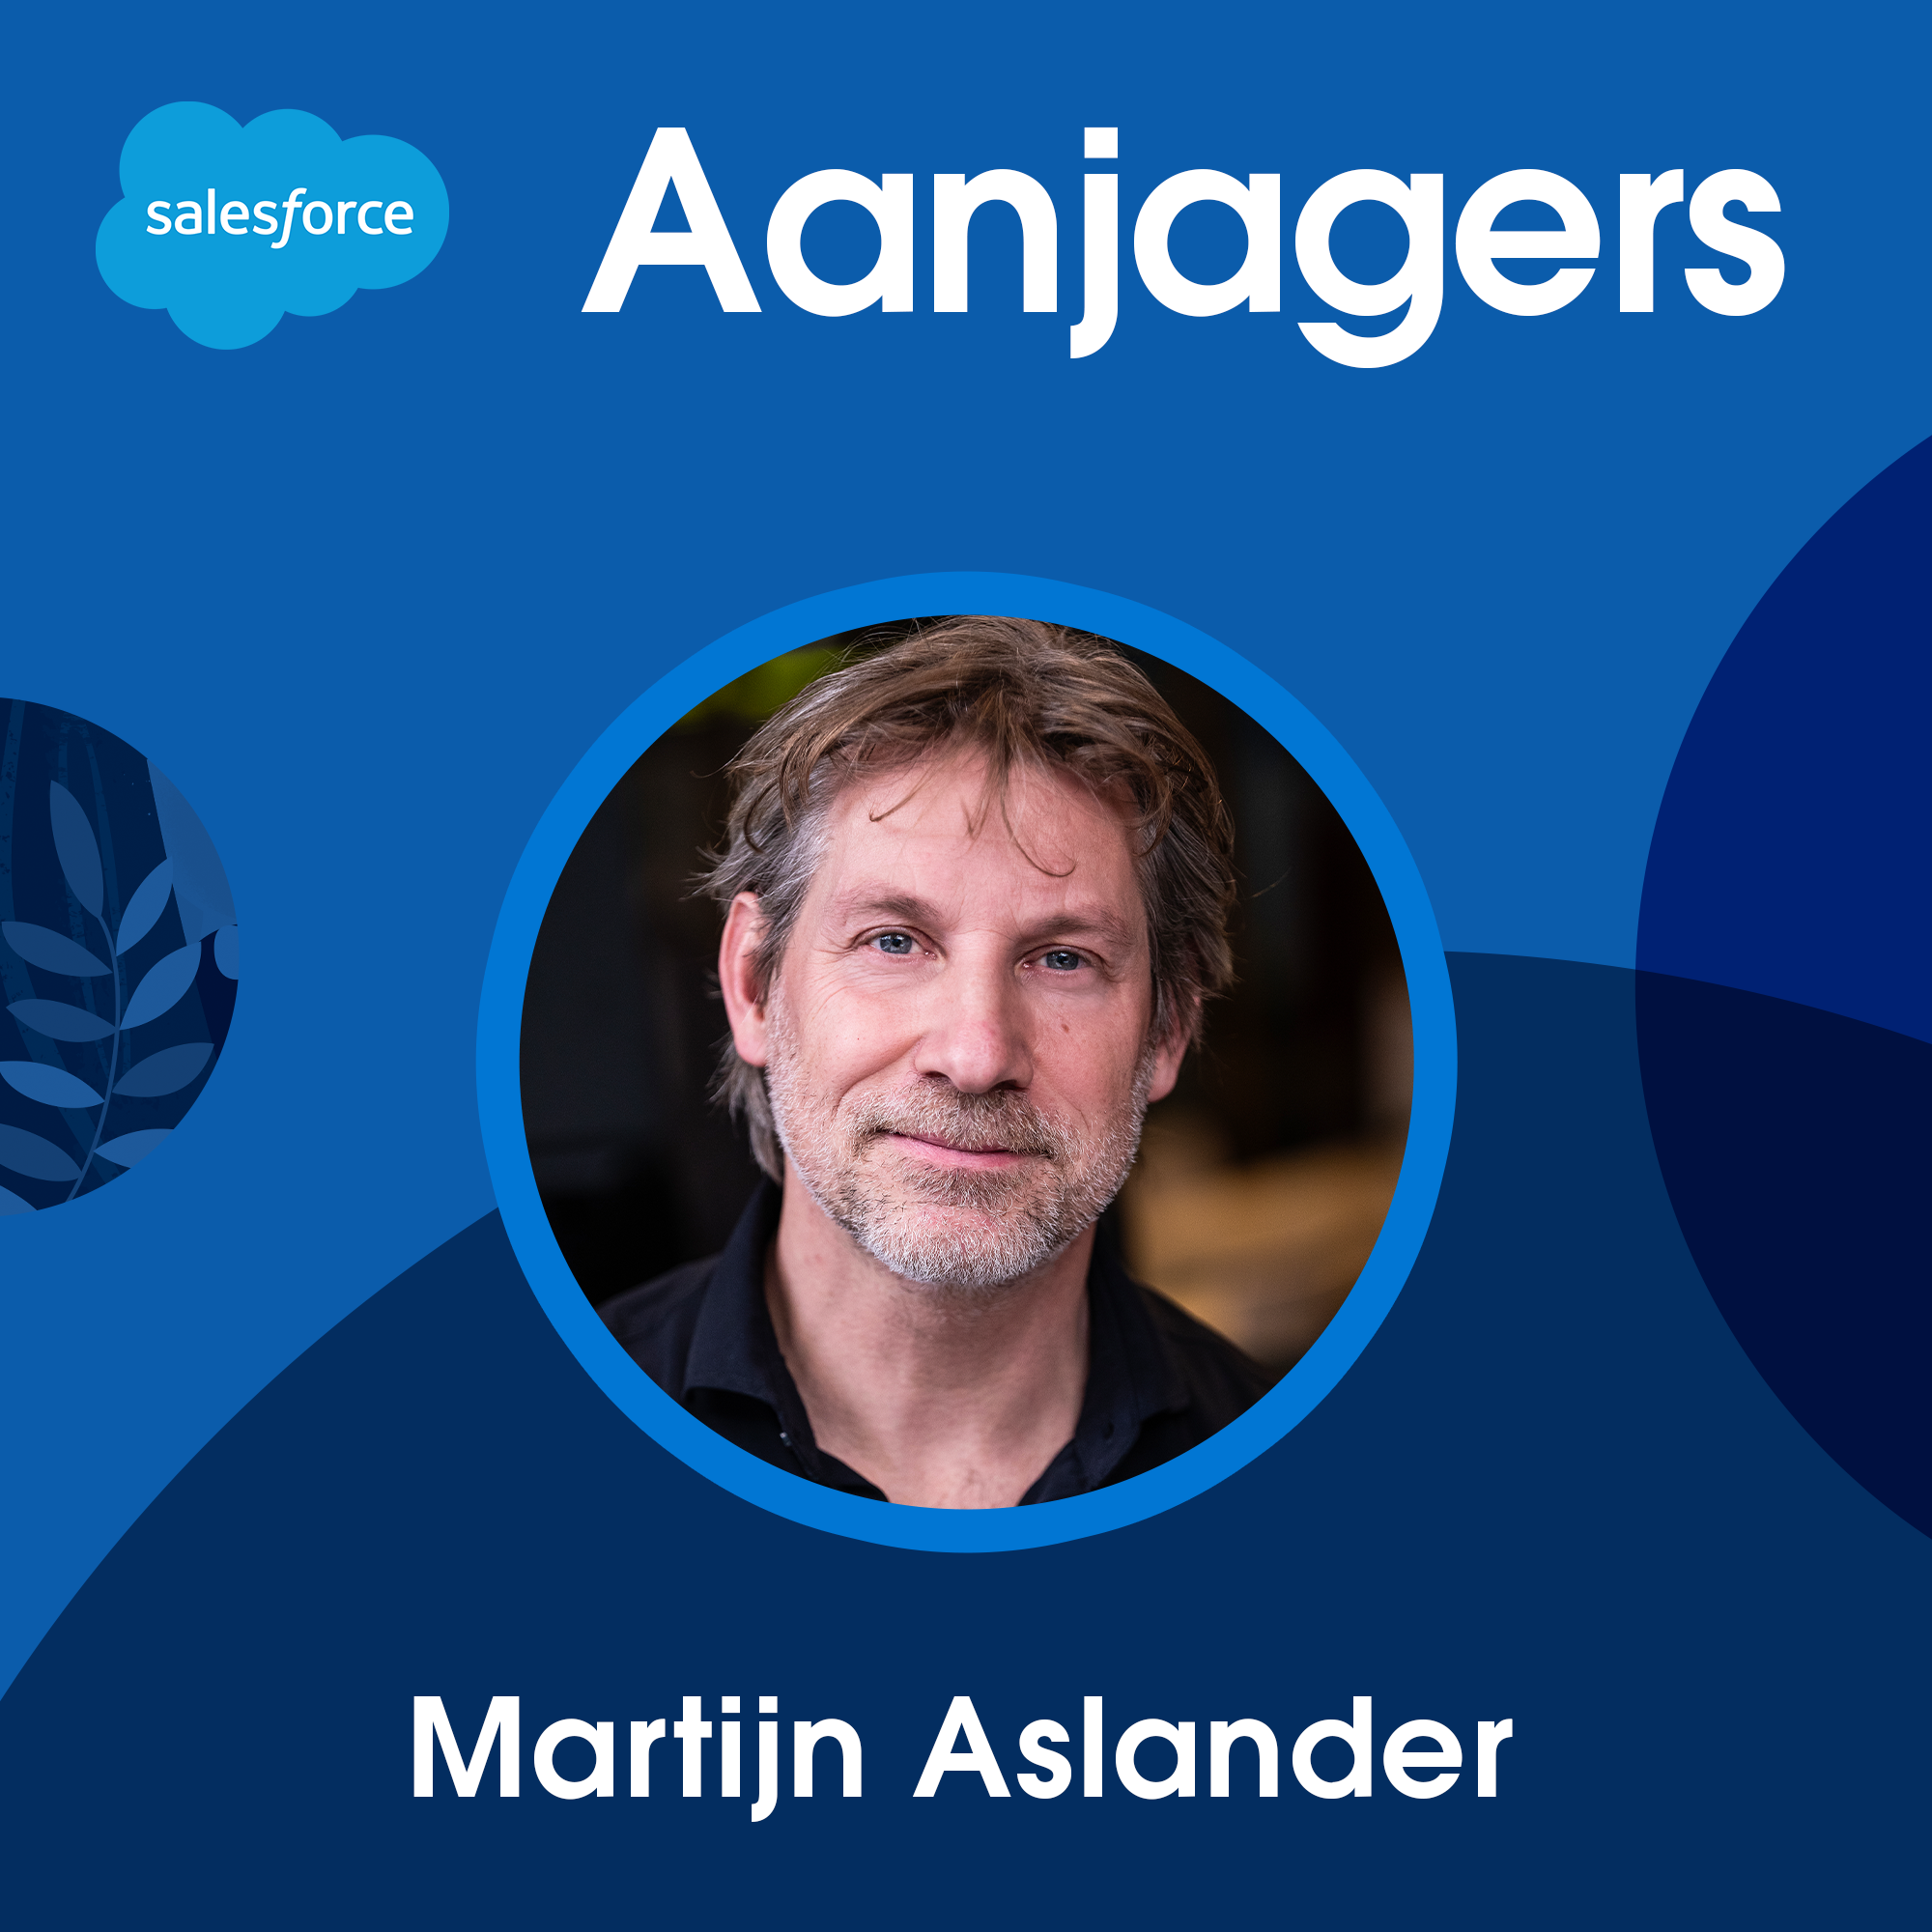 Martijn Aslander: Persoonlijk kennismanagement